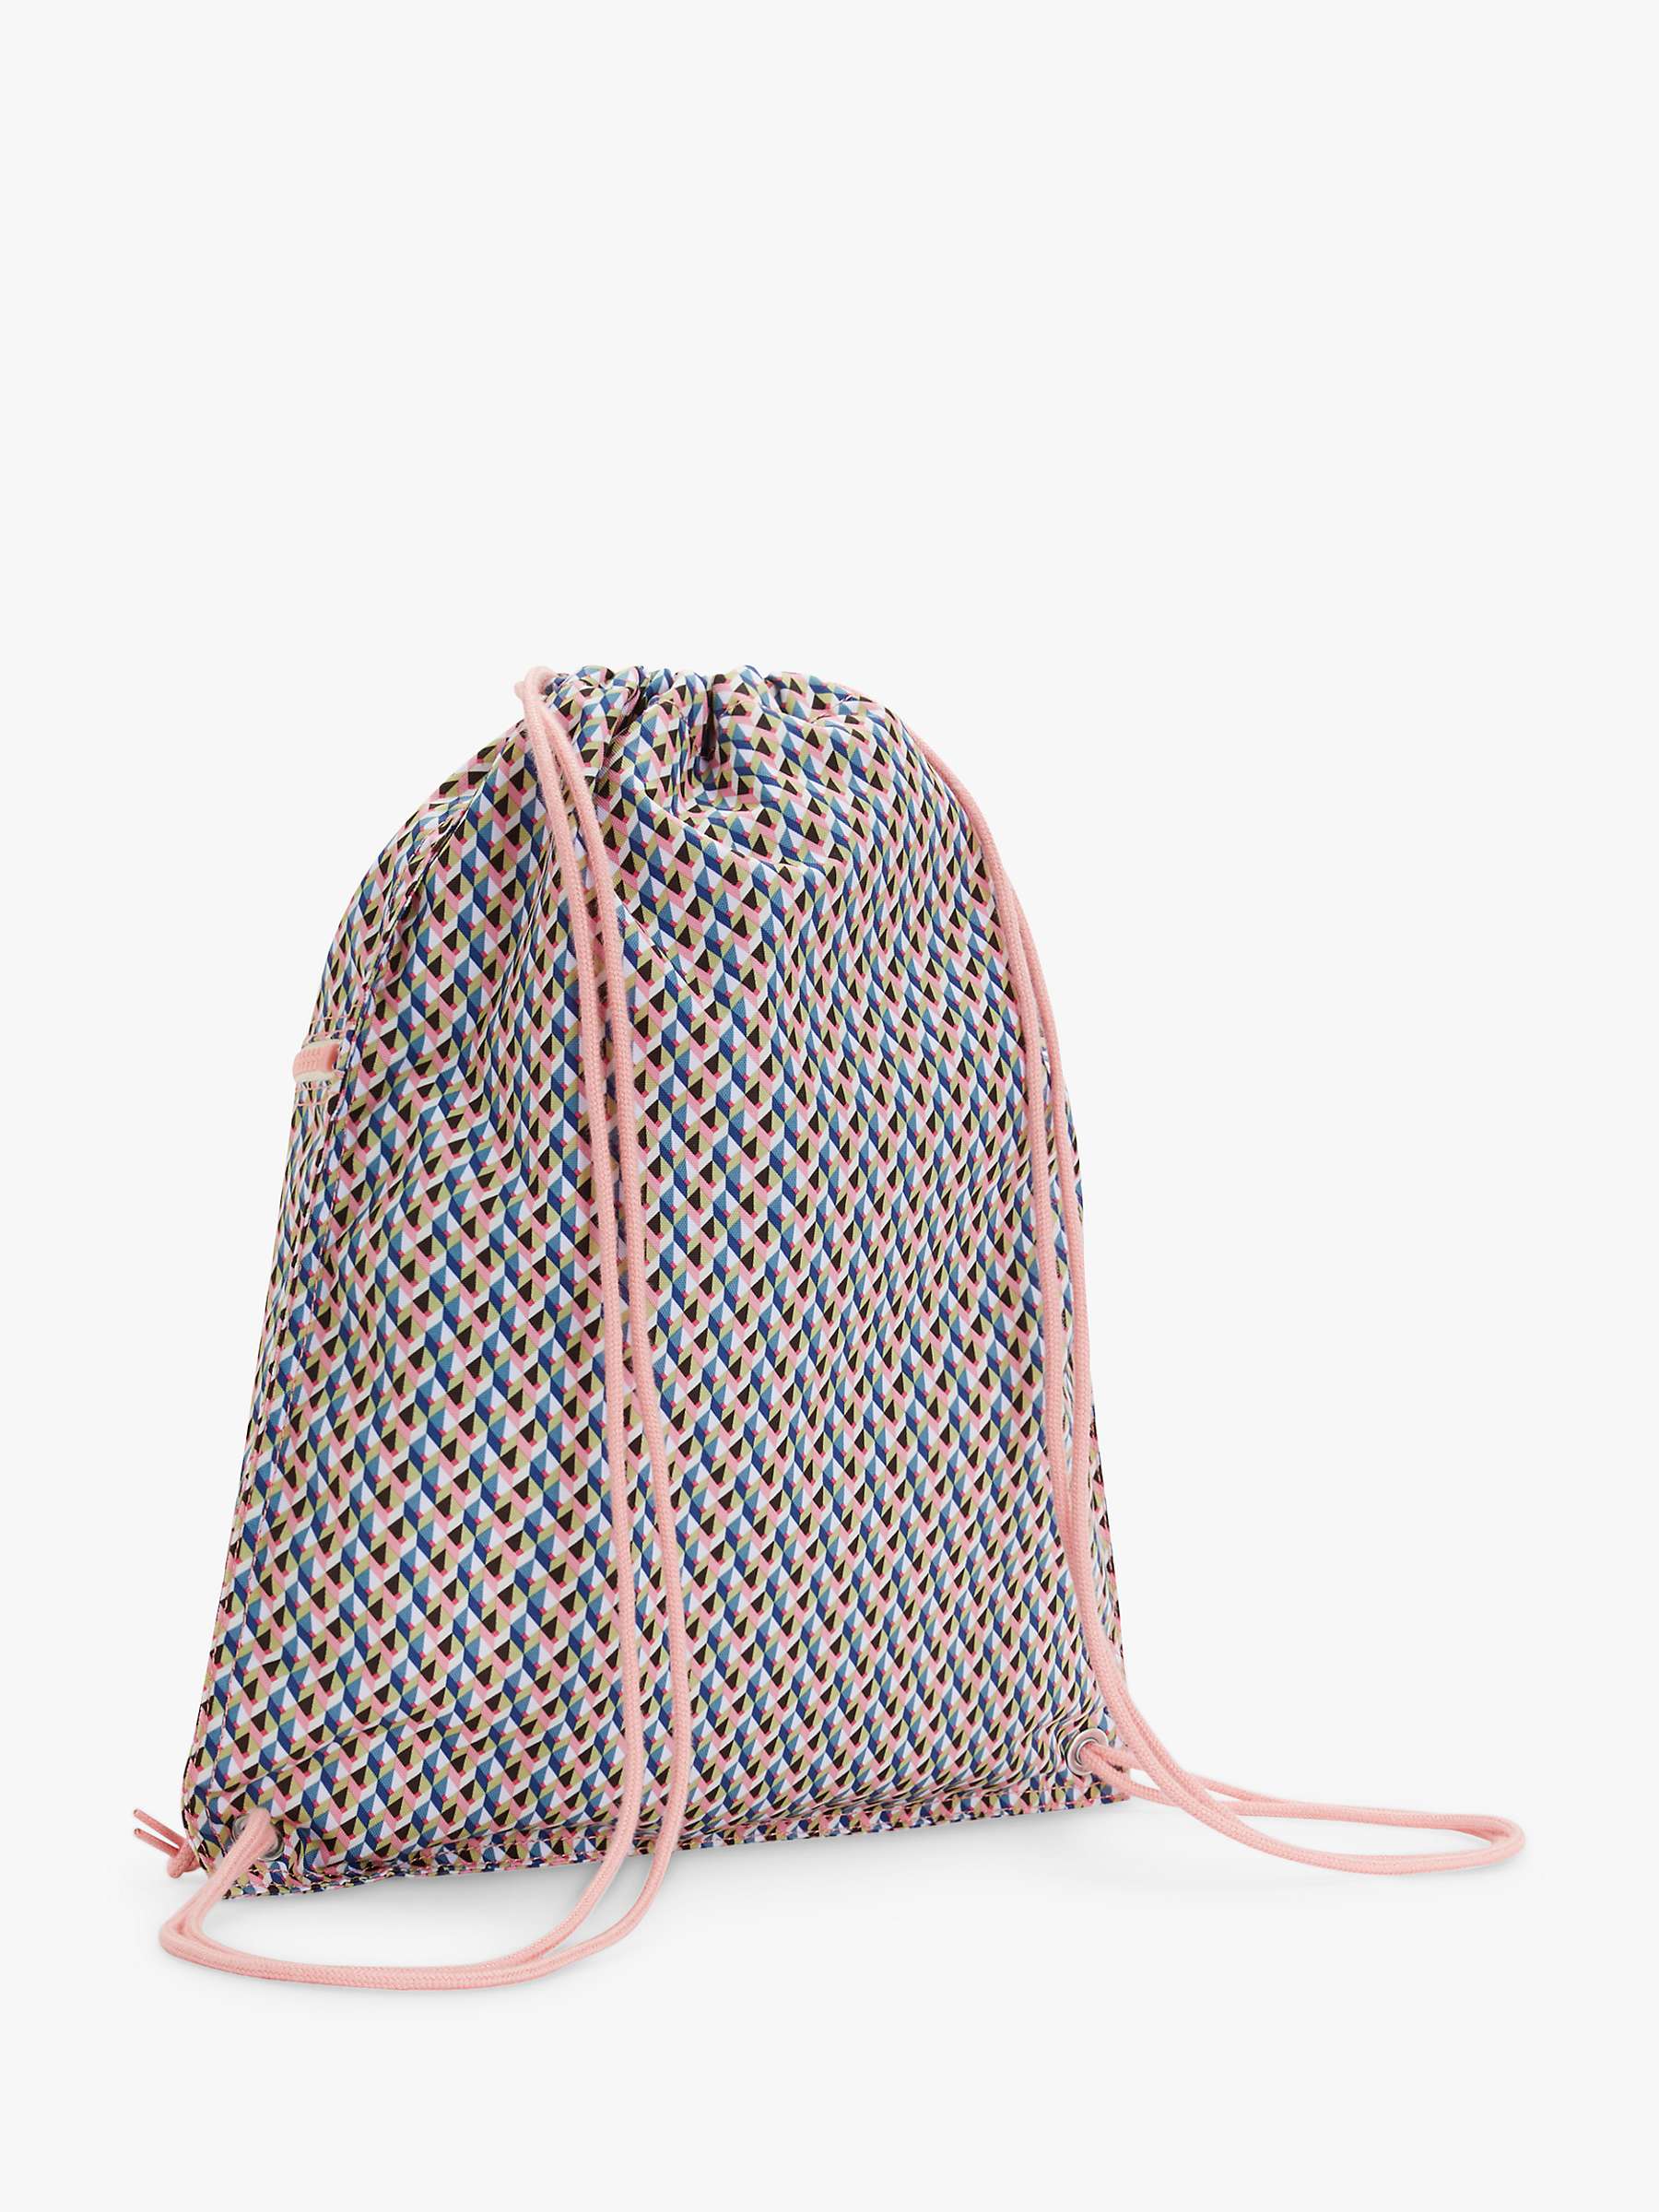 Buy Kipling Kids’ Supertaboo School Drawstring Backpack, Girly Geo Online at johnlewis.com